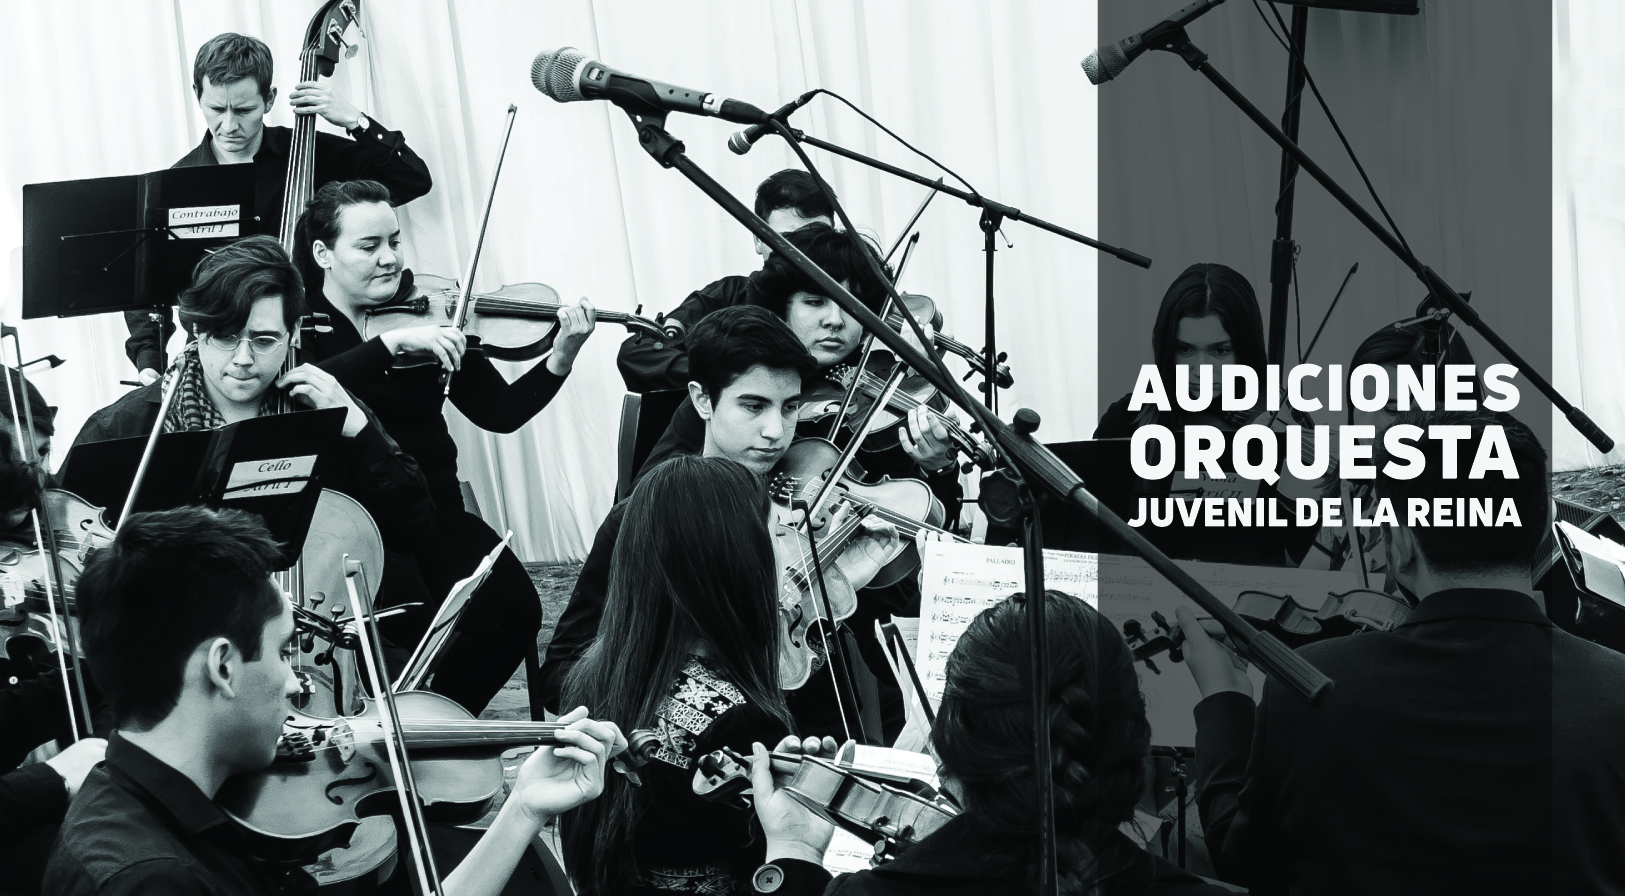 Audiciones Orquesta Juvenil de La Reina 2019